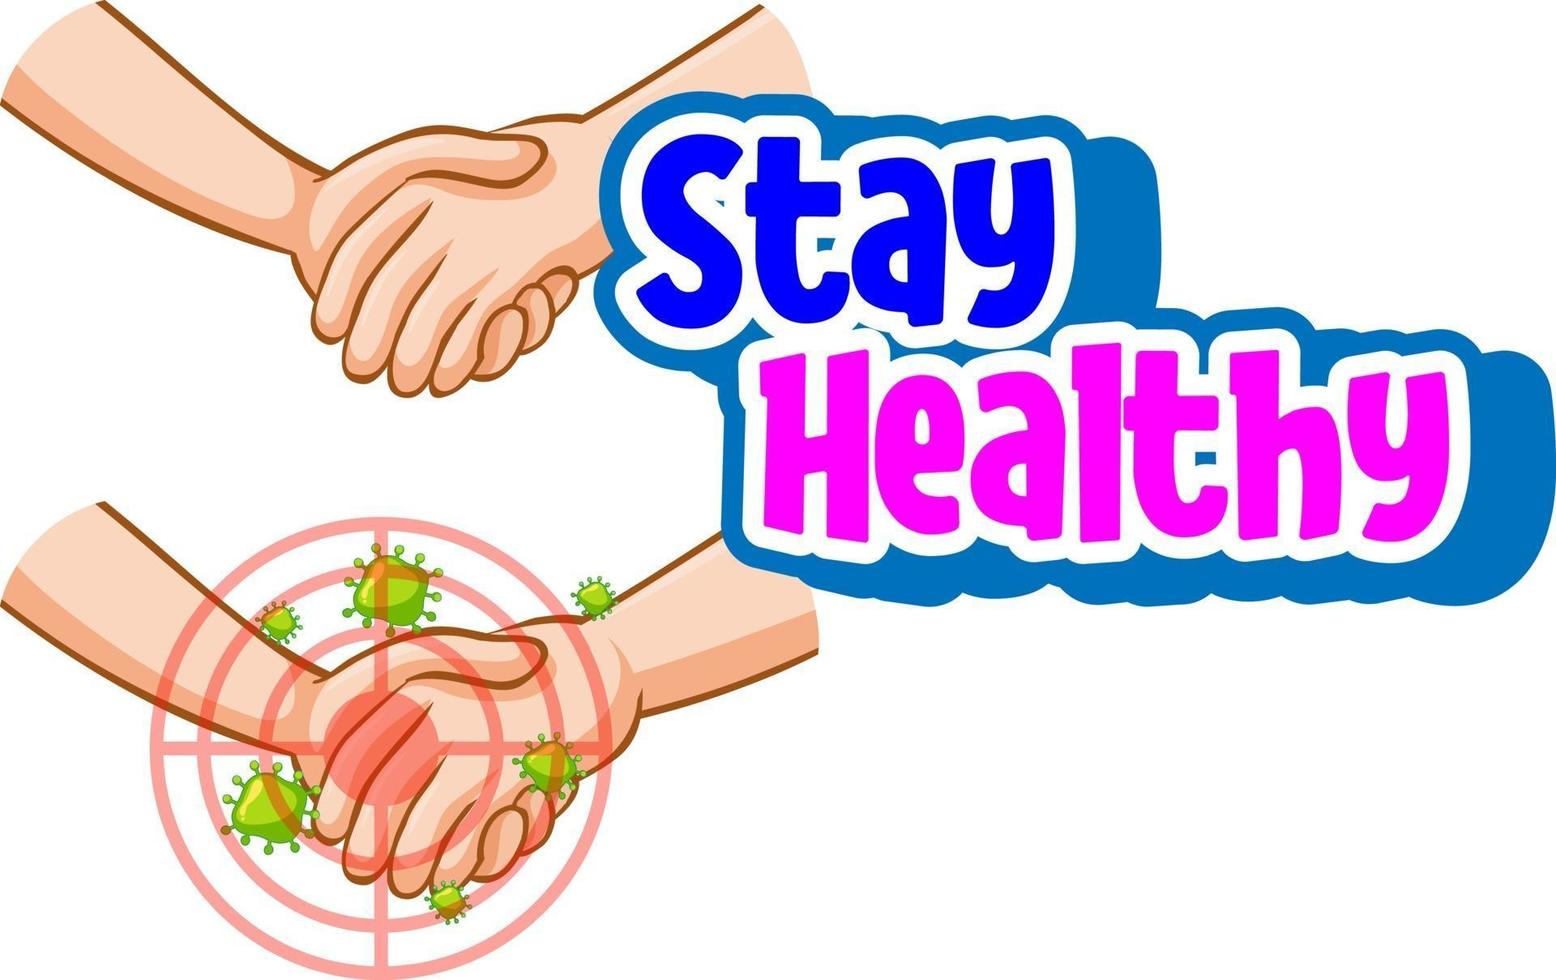 rimani in buona salute con le mani che tengono insieme l'icona del coronavirus vettore